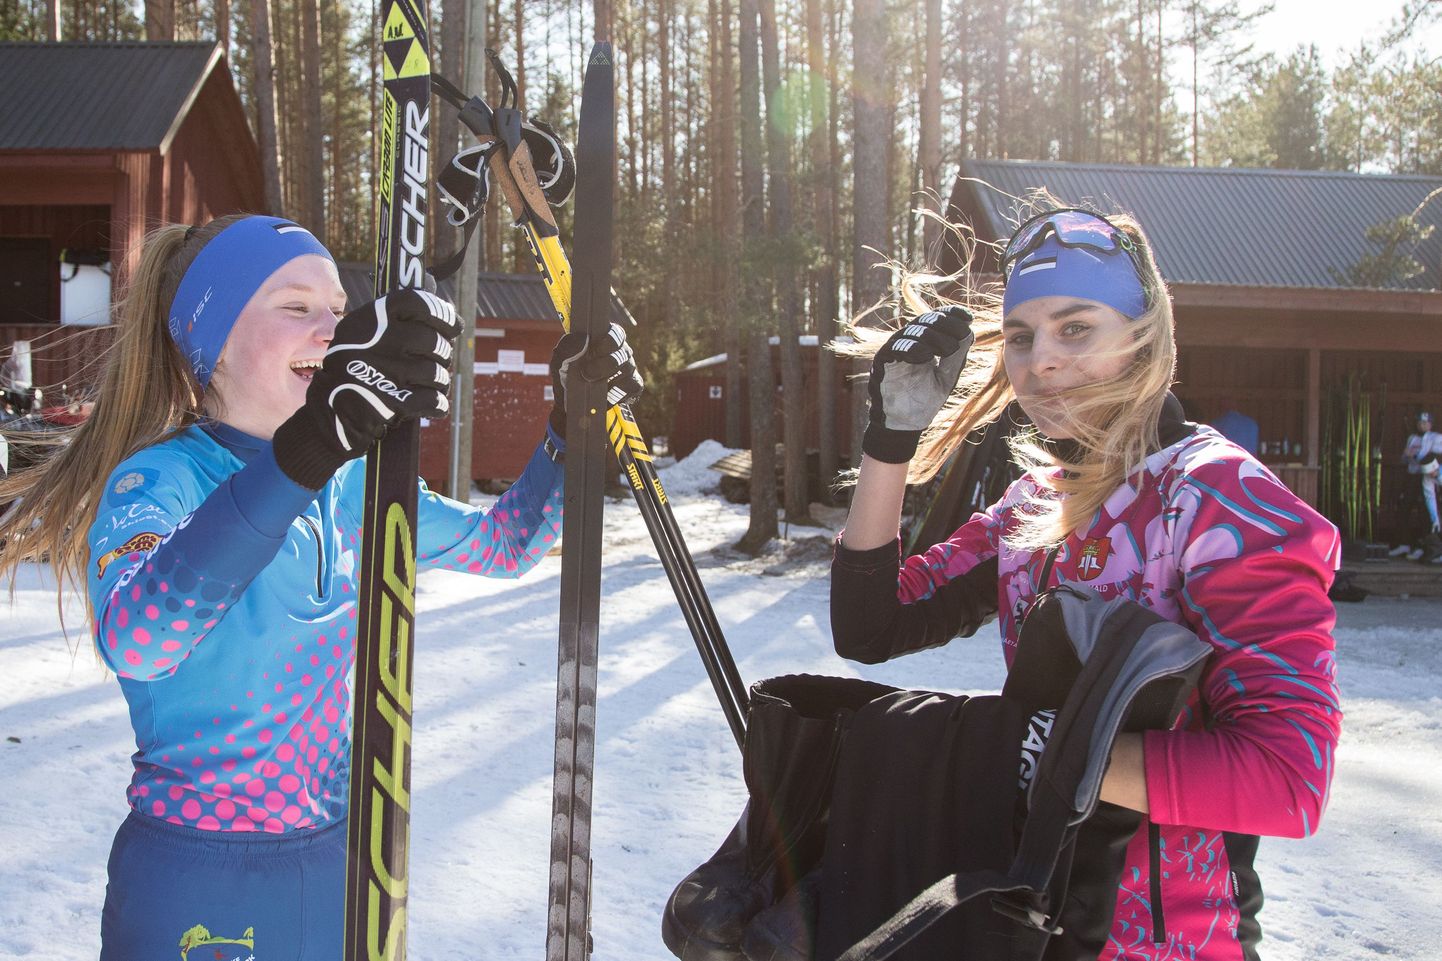 Вдобавок к Херте Раяс и Авели Уусталу, которые в пятницу завоевали серебро в командном спринте в возрастном классе U20, в женскую эстафетную команду Алутагузеского лыжного клуба входила также Лизет Вяхк.